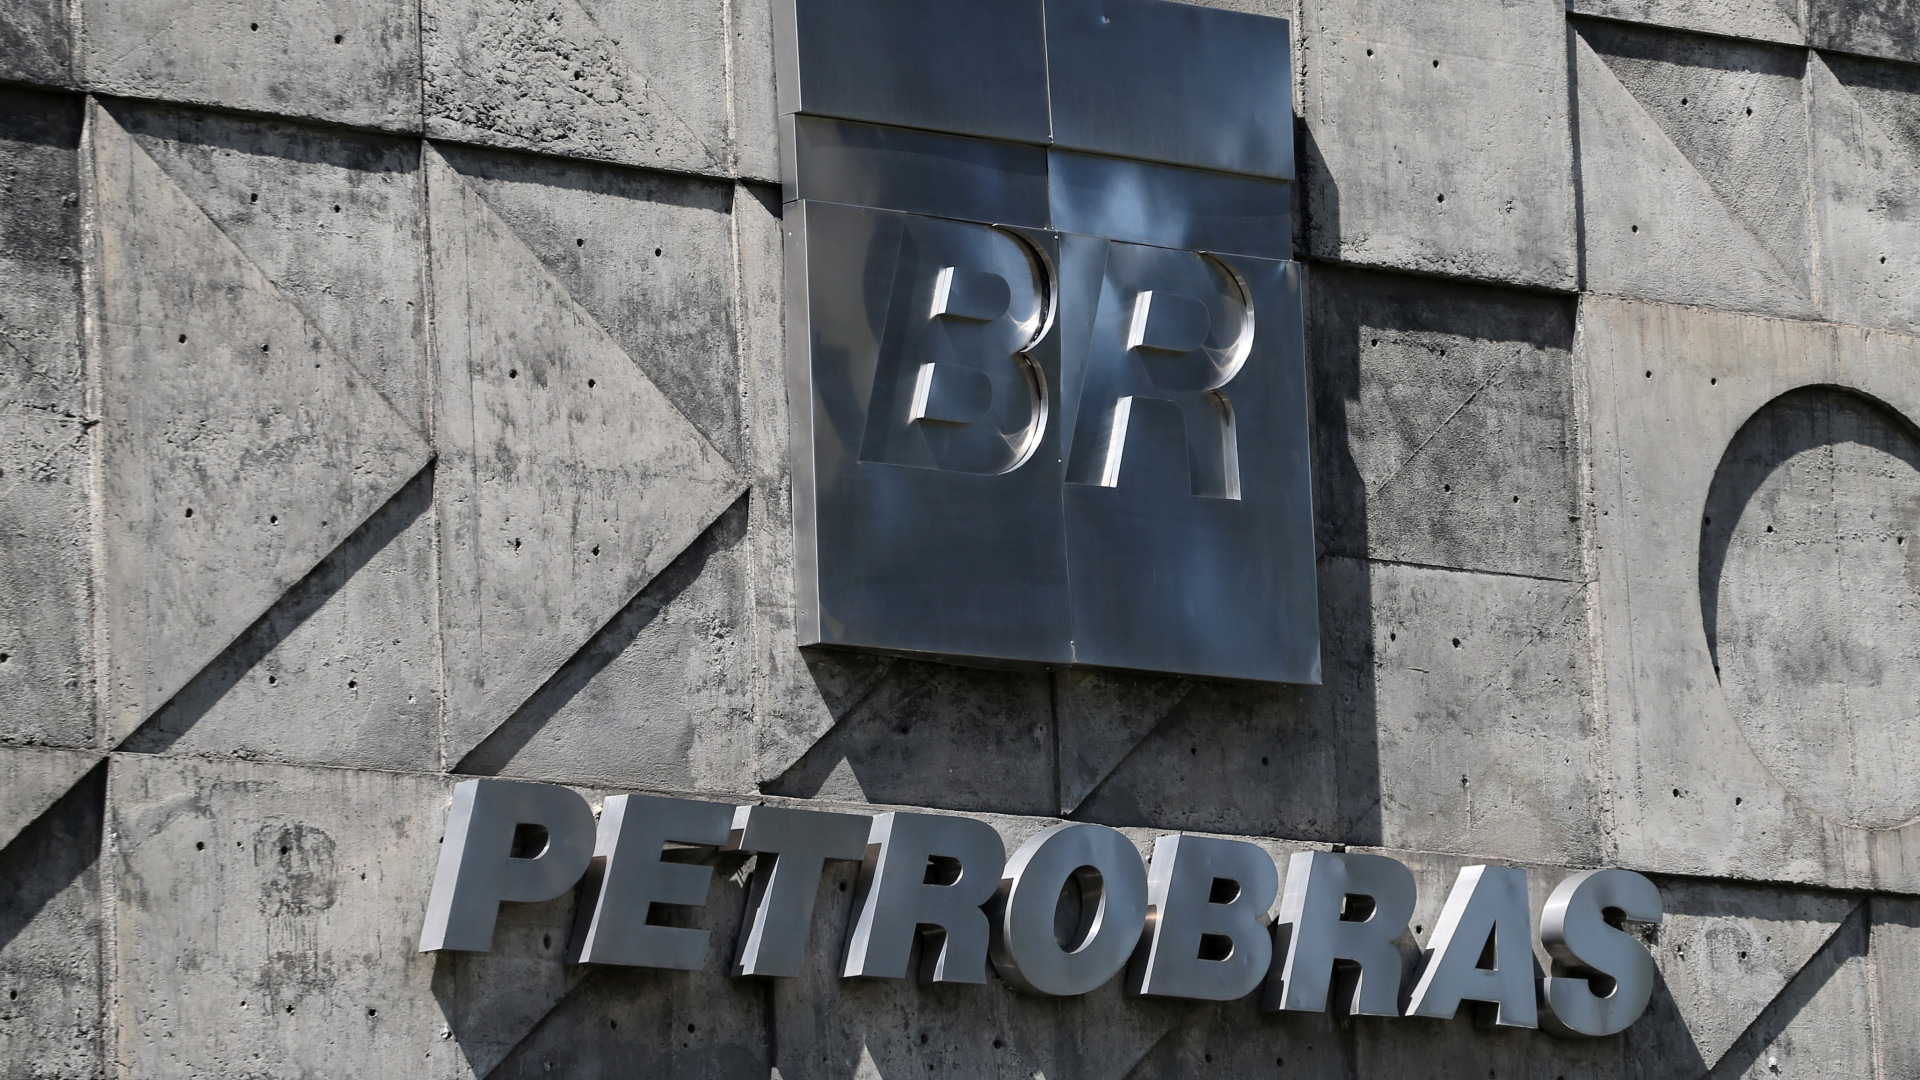 Petrobras nomeia Fernando Borges como presidente interino